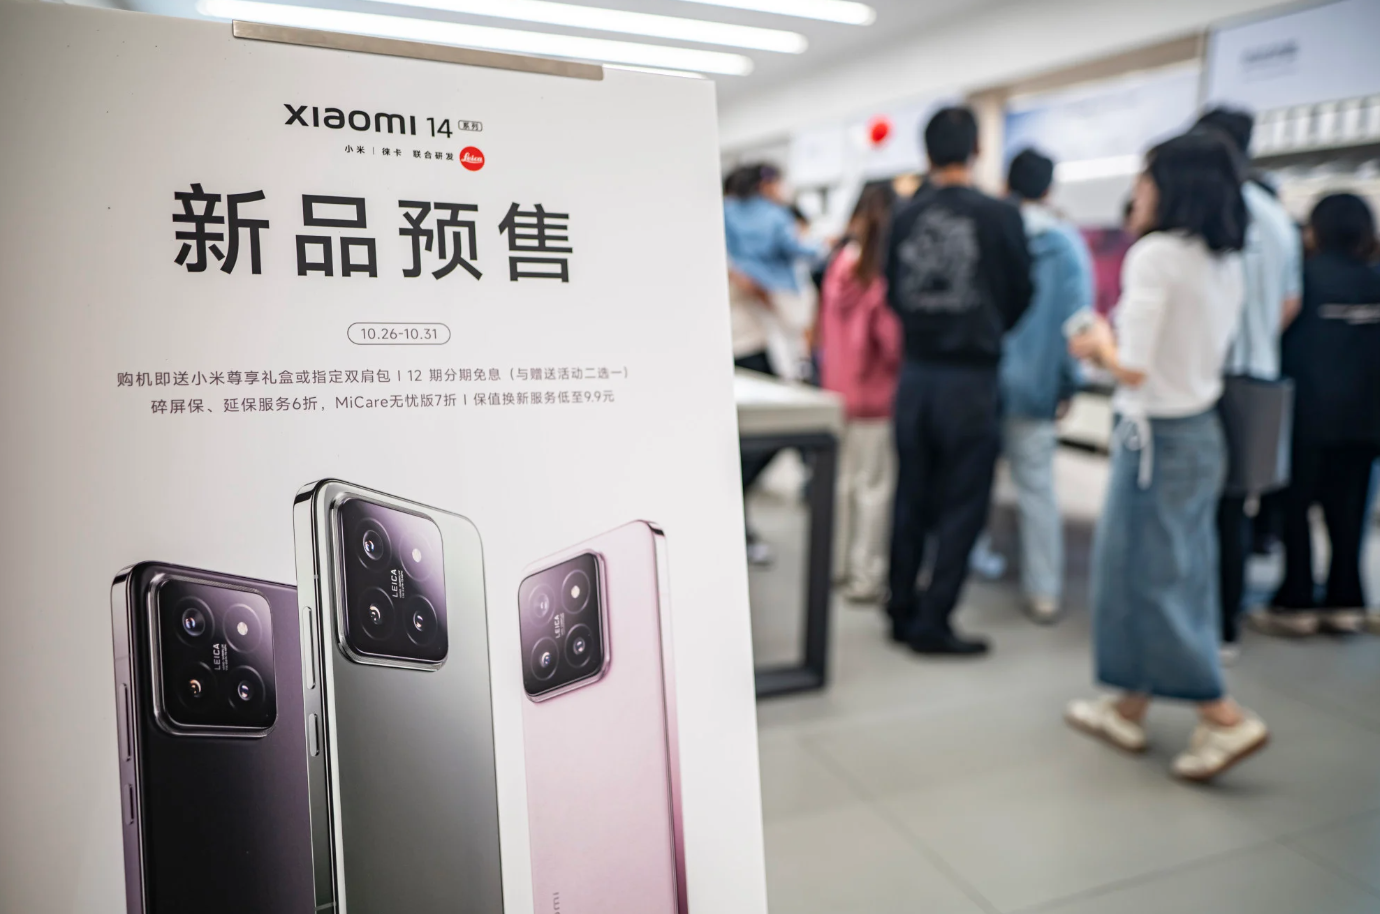 iPhone bị thất sủng ở Trung Quốc, Huawei và Xiaomi lên ngôi: Cơn ác mộng của Apple đang đến gần- Ảnh 3.